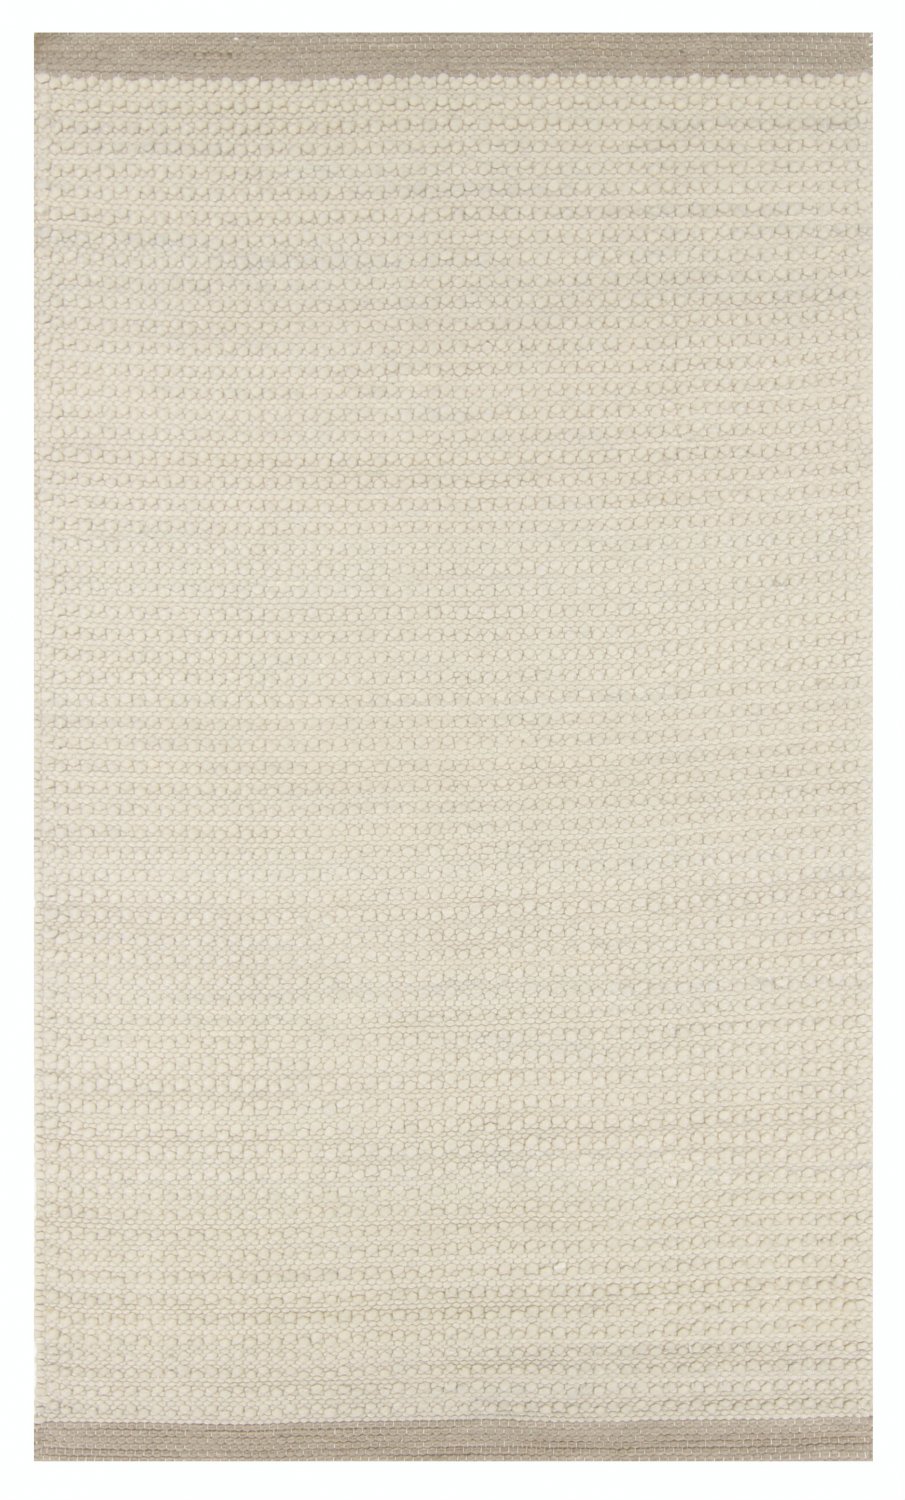 Wool rug - Odessa (beige)